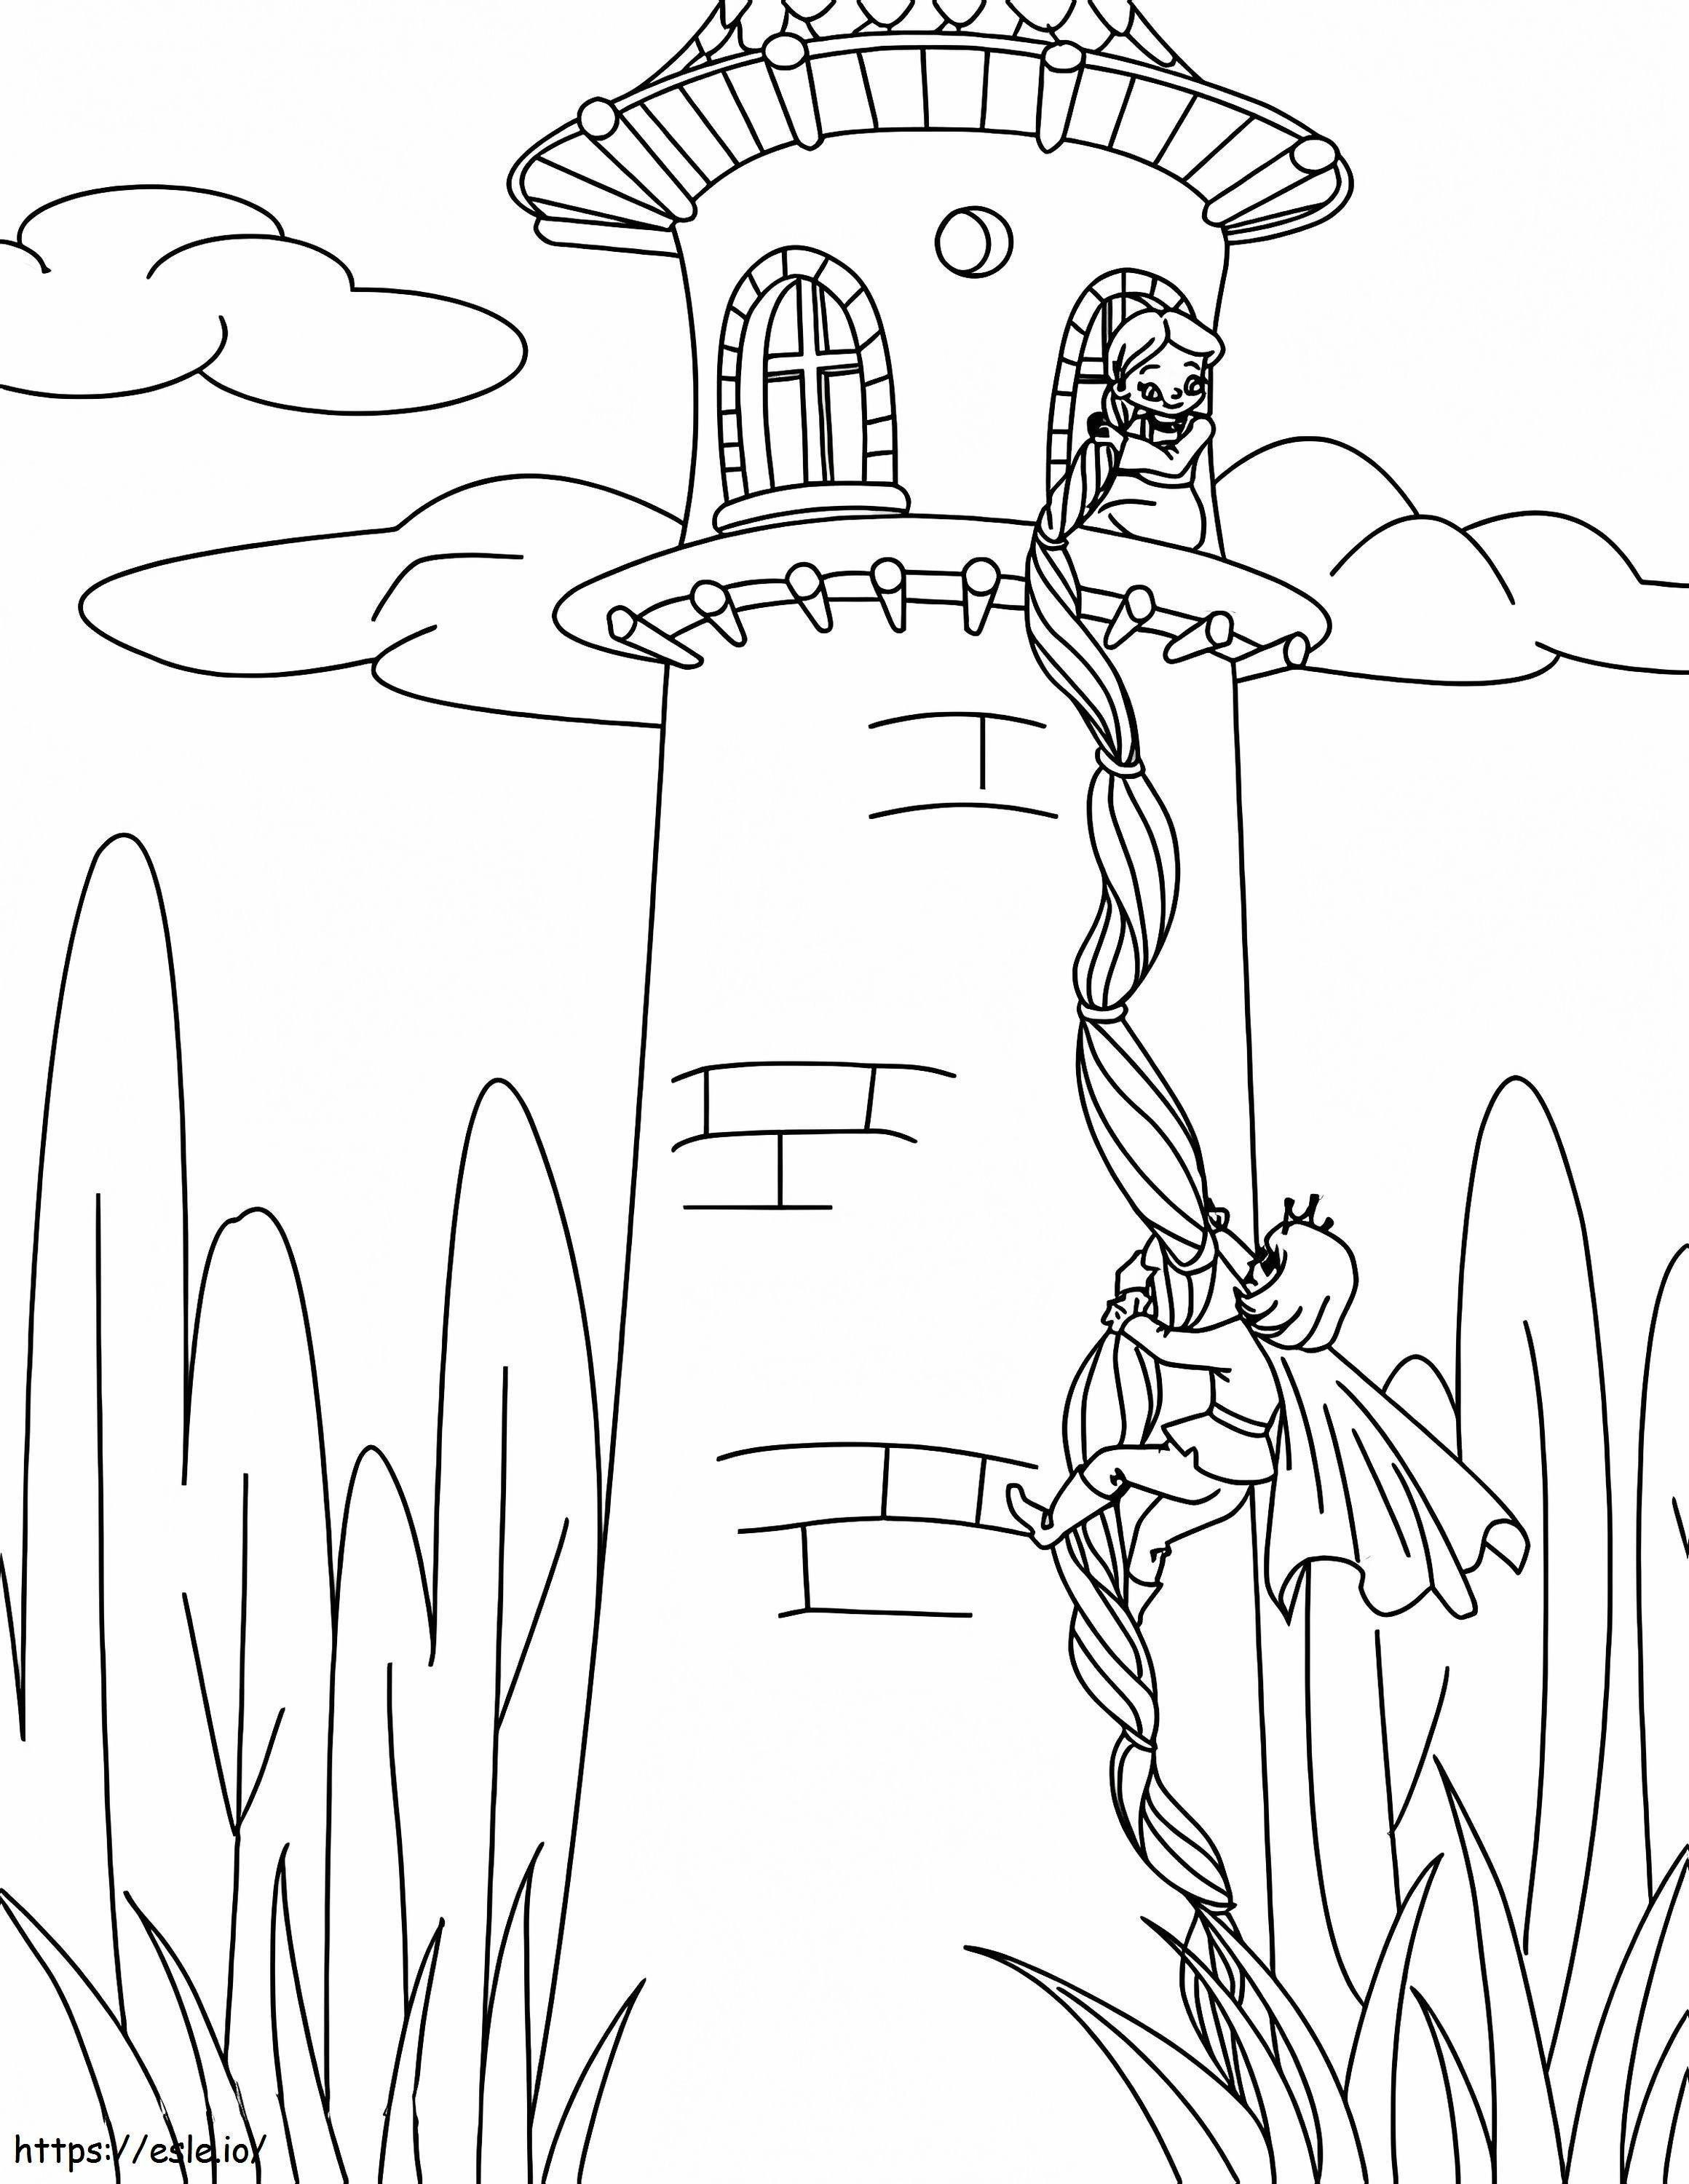 Rapunzel în turn de colorat